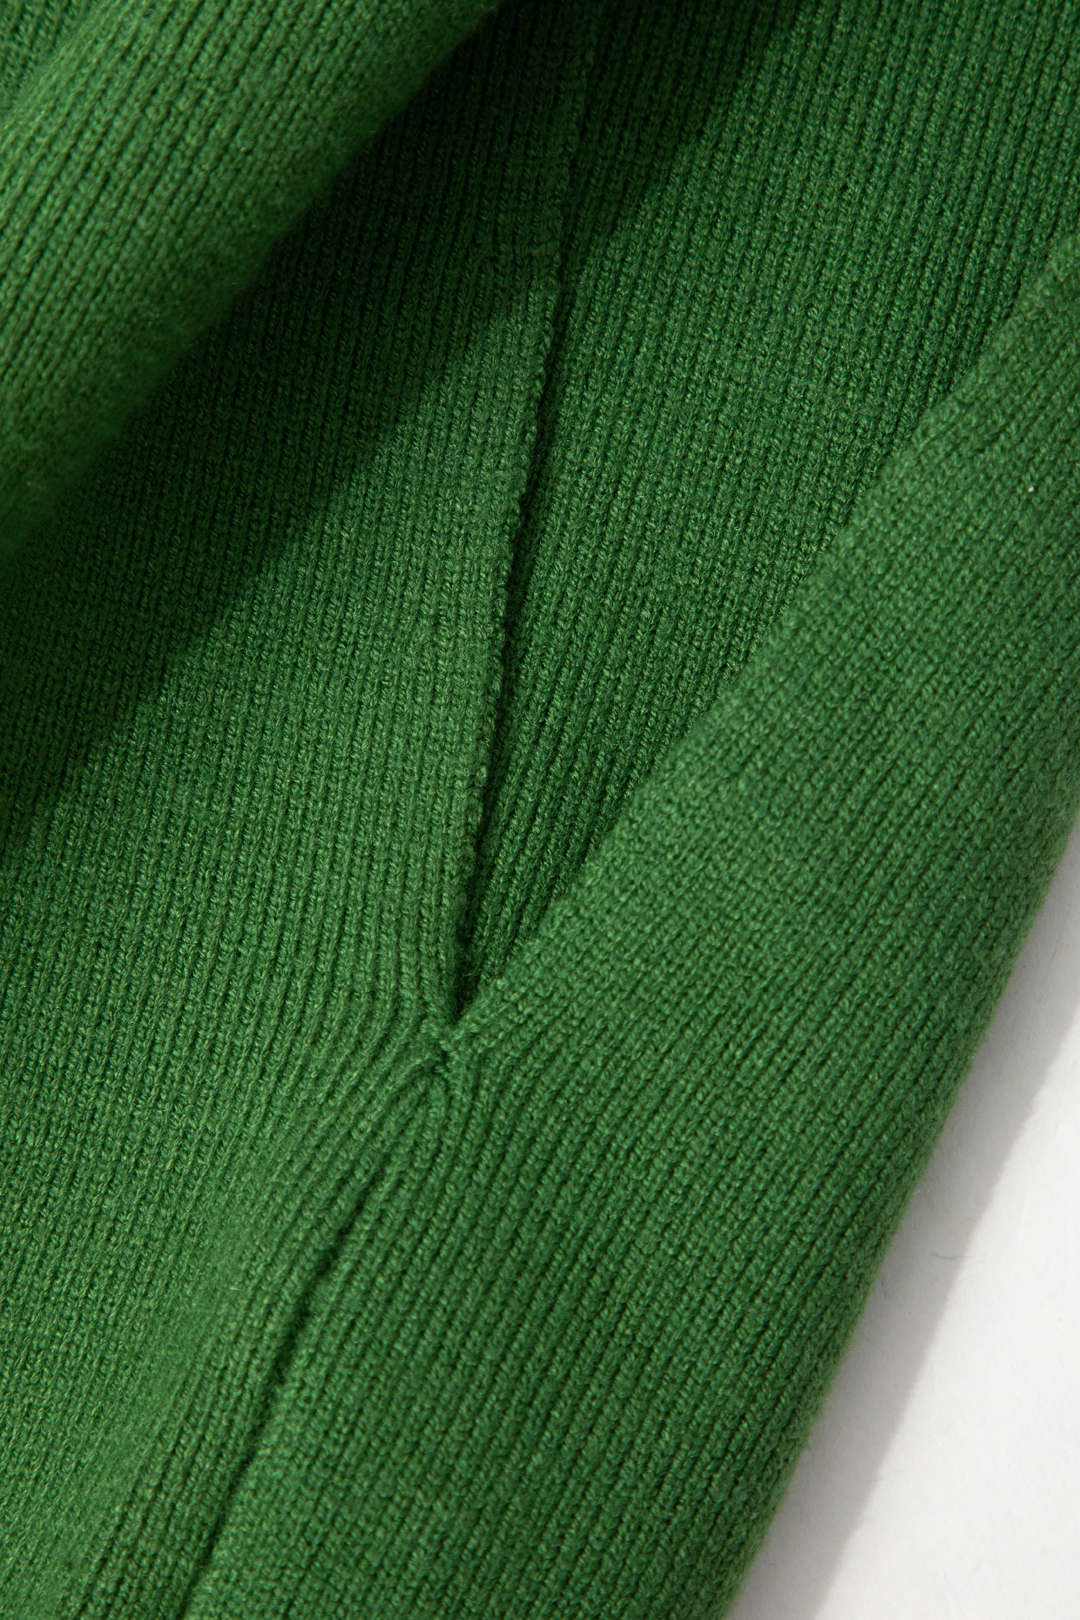 Open Collar Knit Sleeveless Crop Top